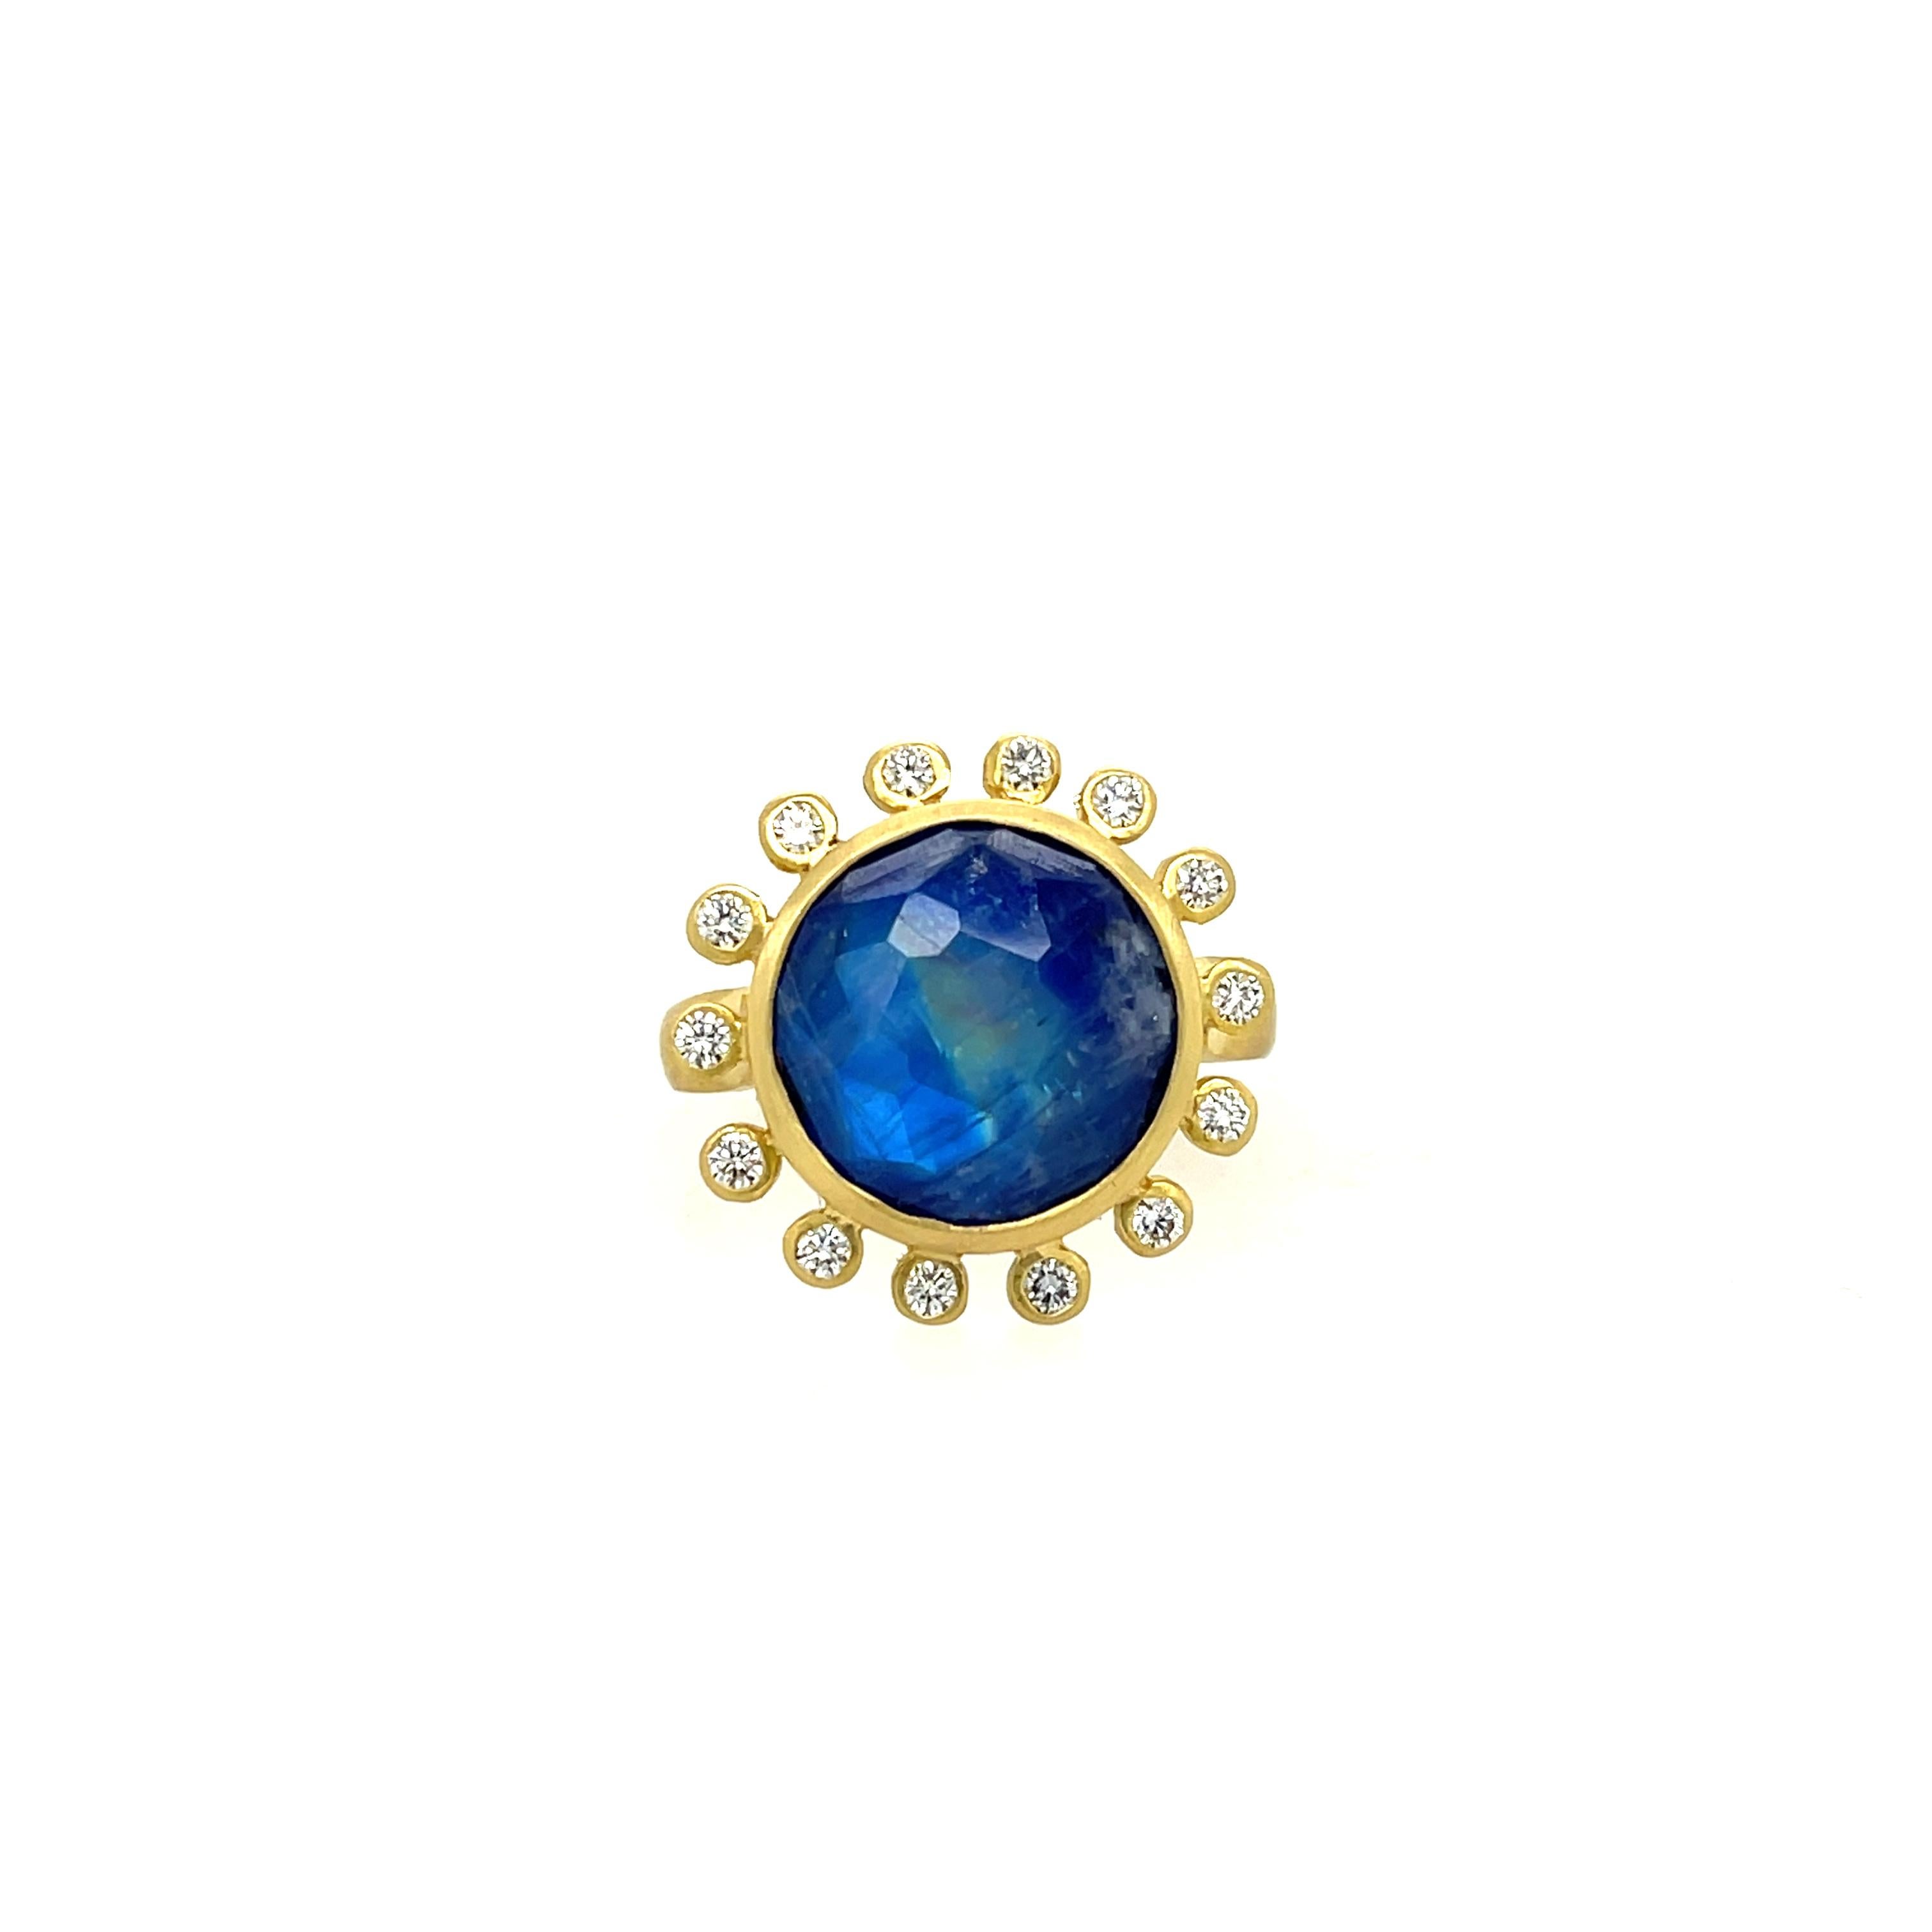 Mazza Lapis Mondstein Doublet und Diamant (0,28ctw) Ring in 14K Gelbgold. Ring Größe 6.5
Durchmesser 0,75